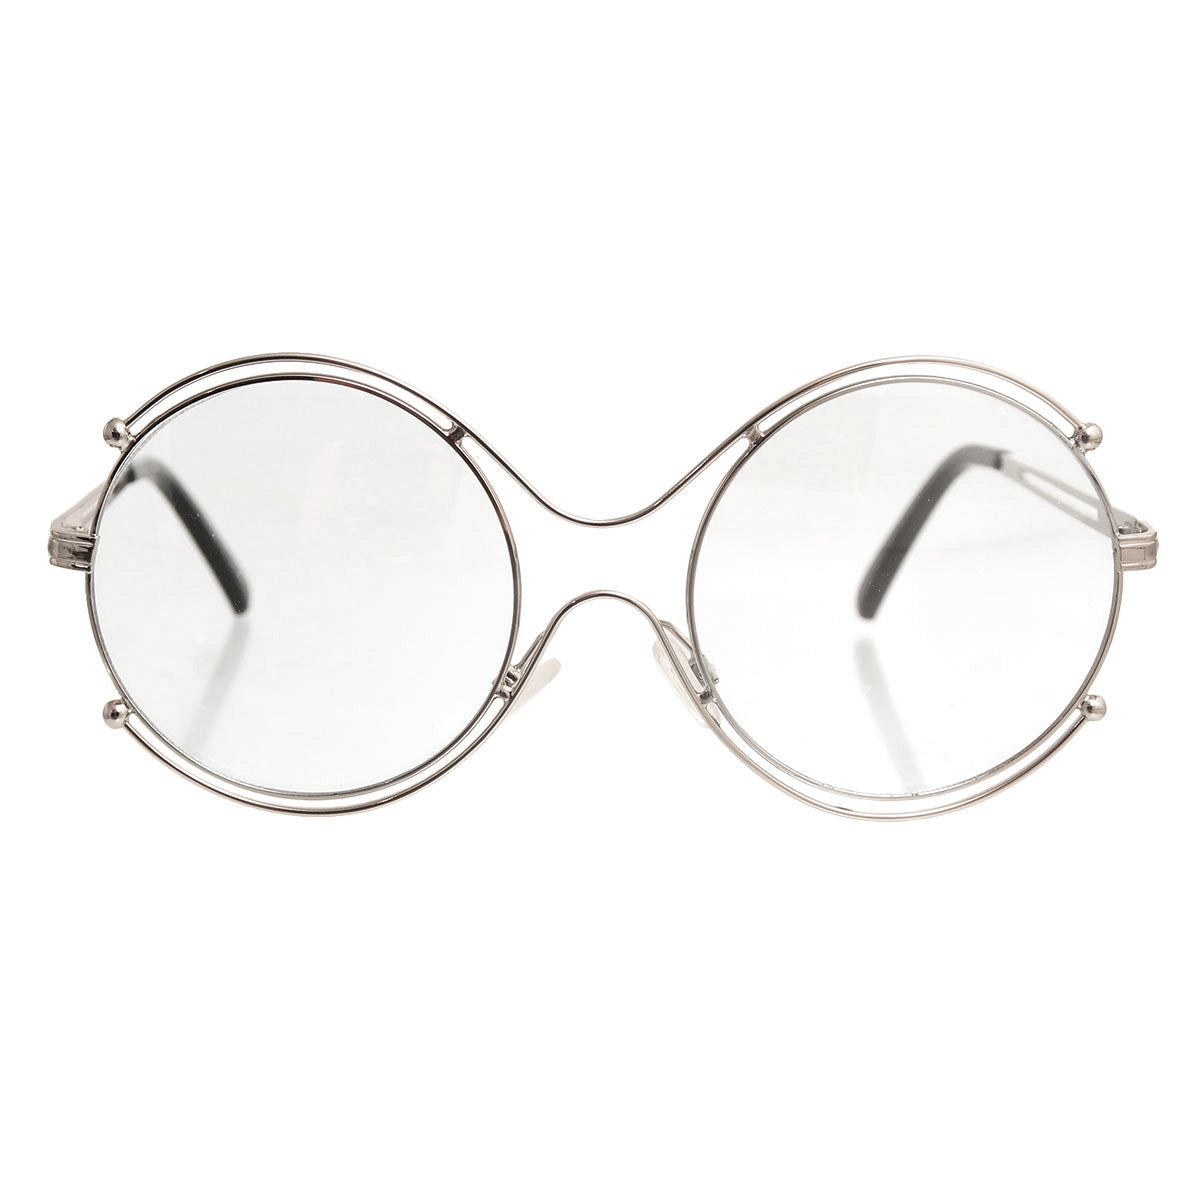 Retro Round Silver Clear Glasses